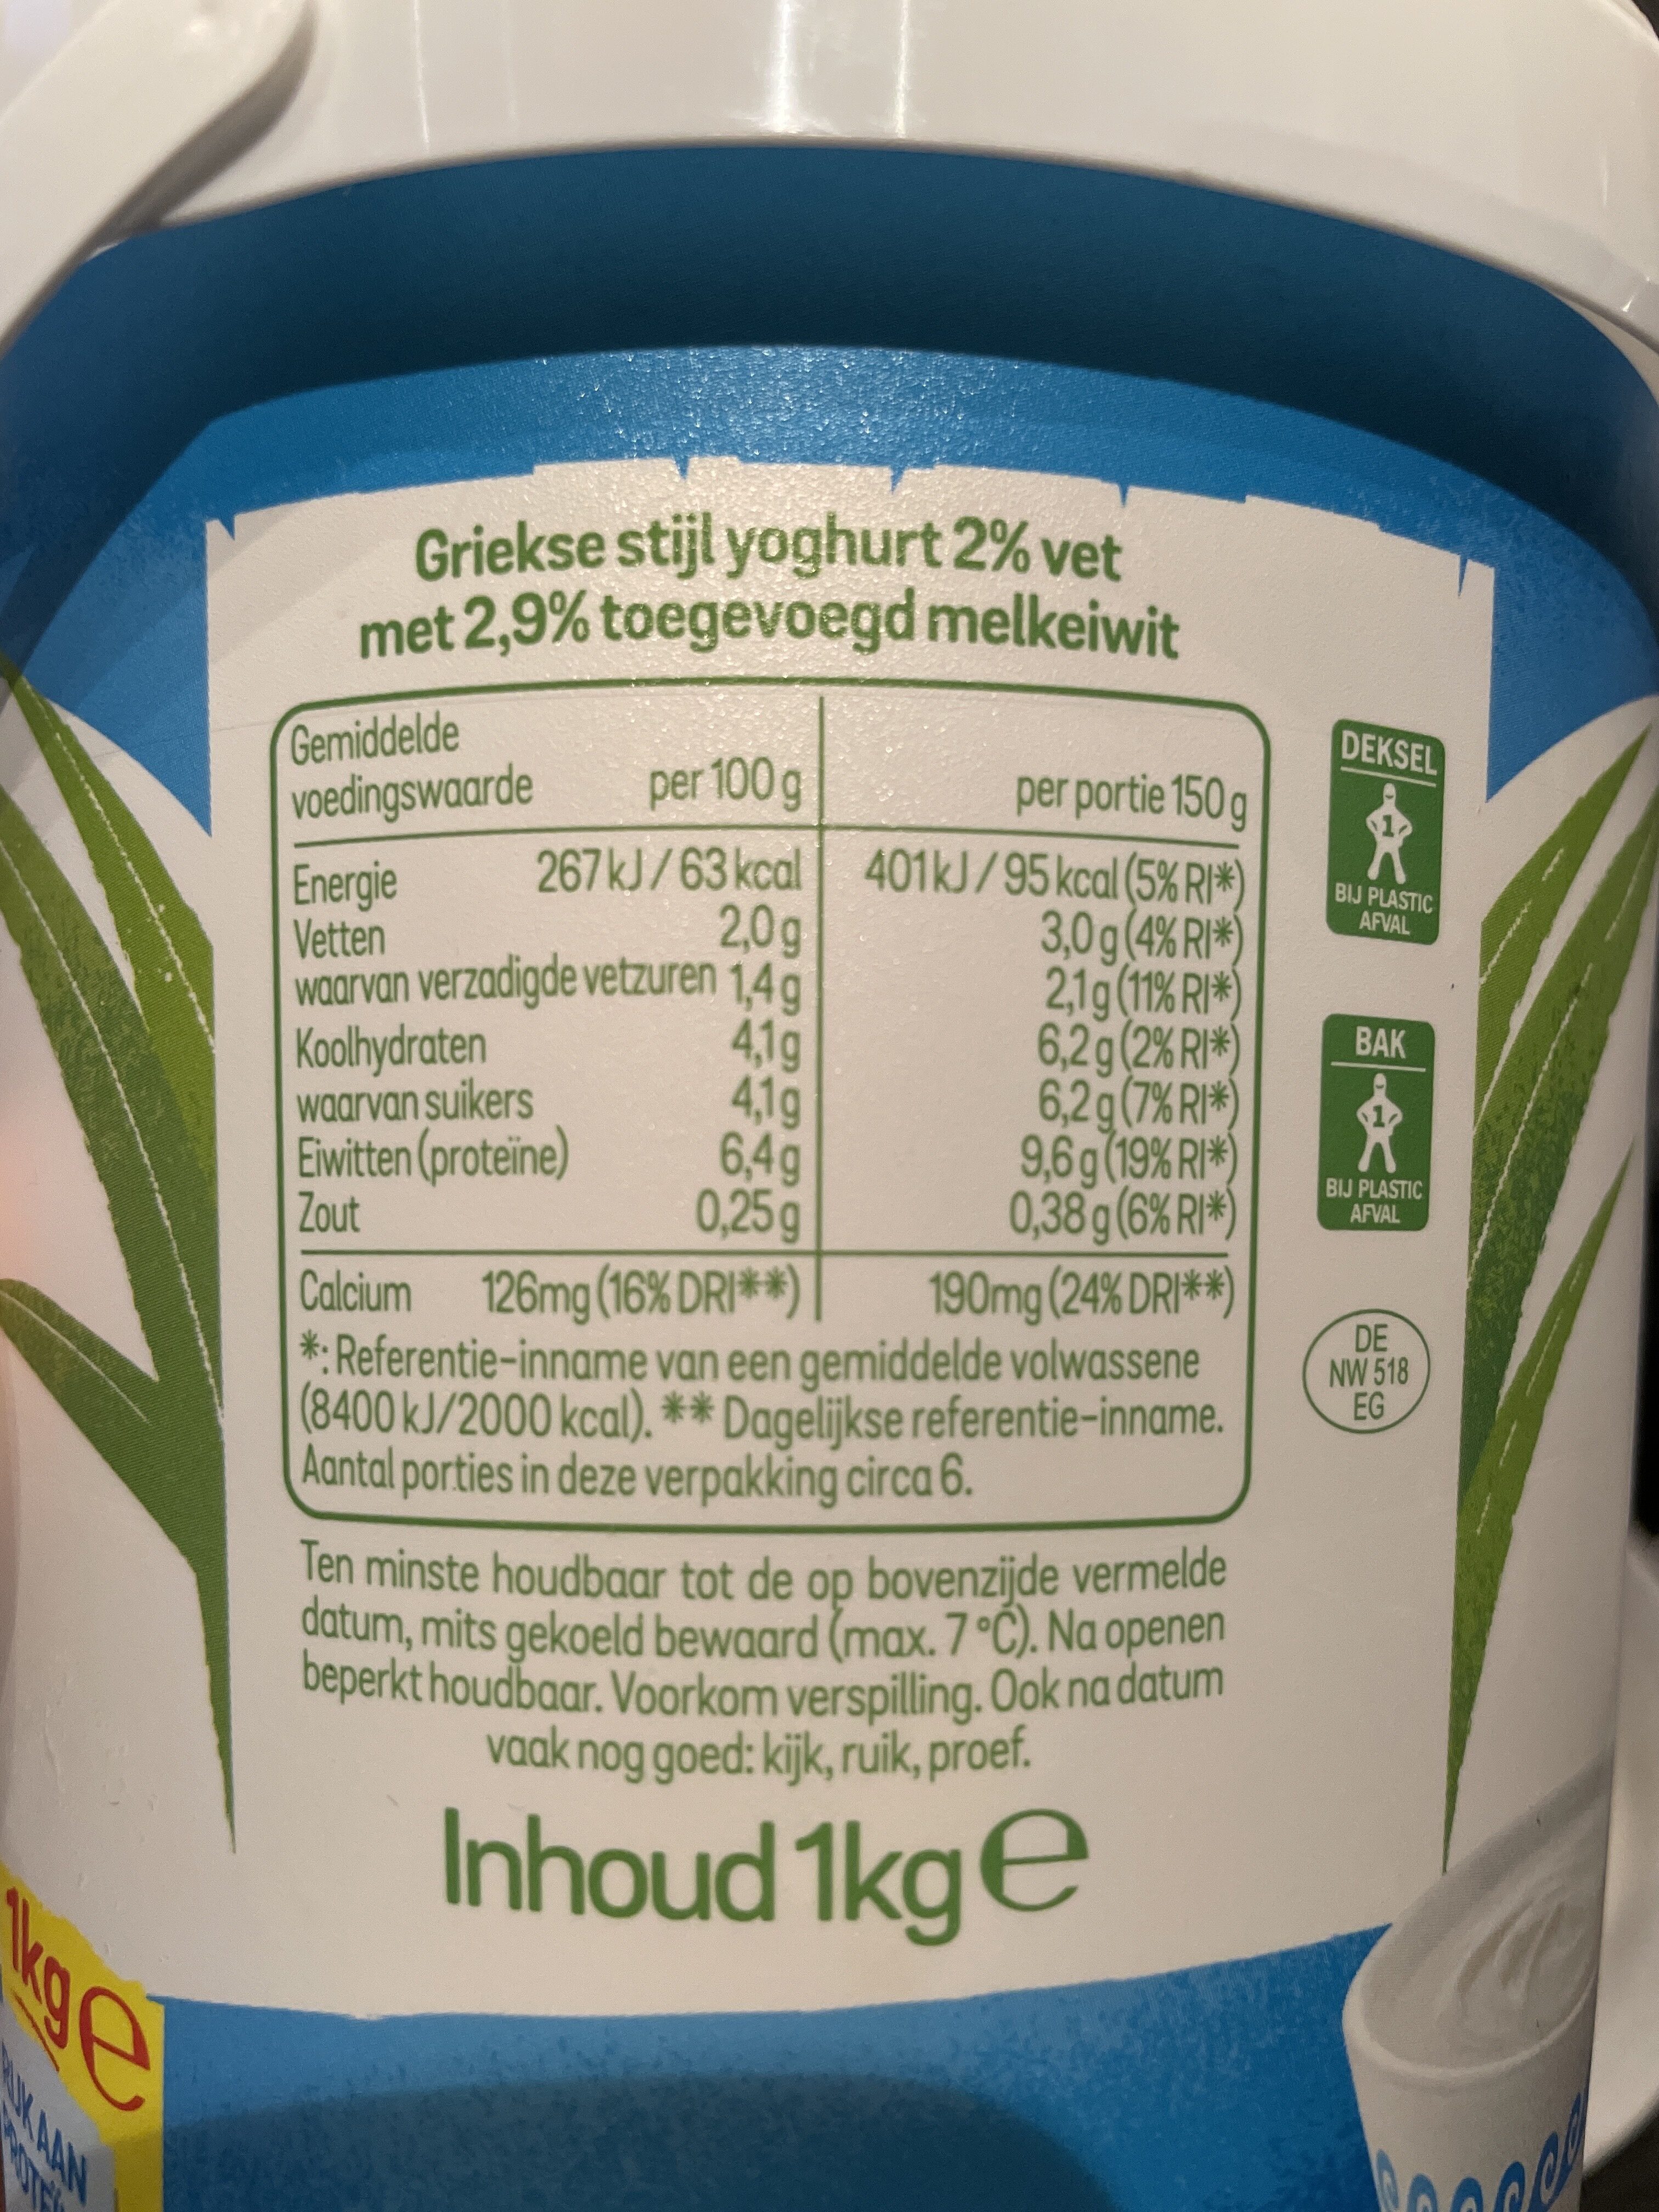 Griekse stijl yoghurt 2% - Voedingswaarden